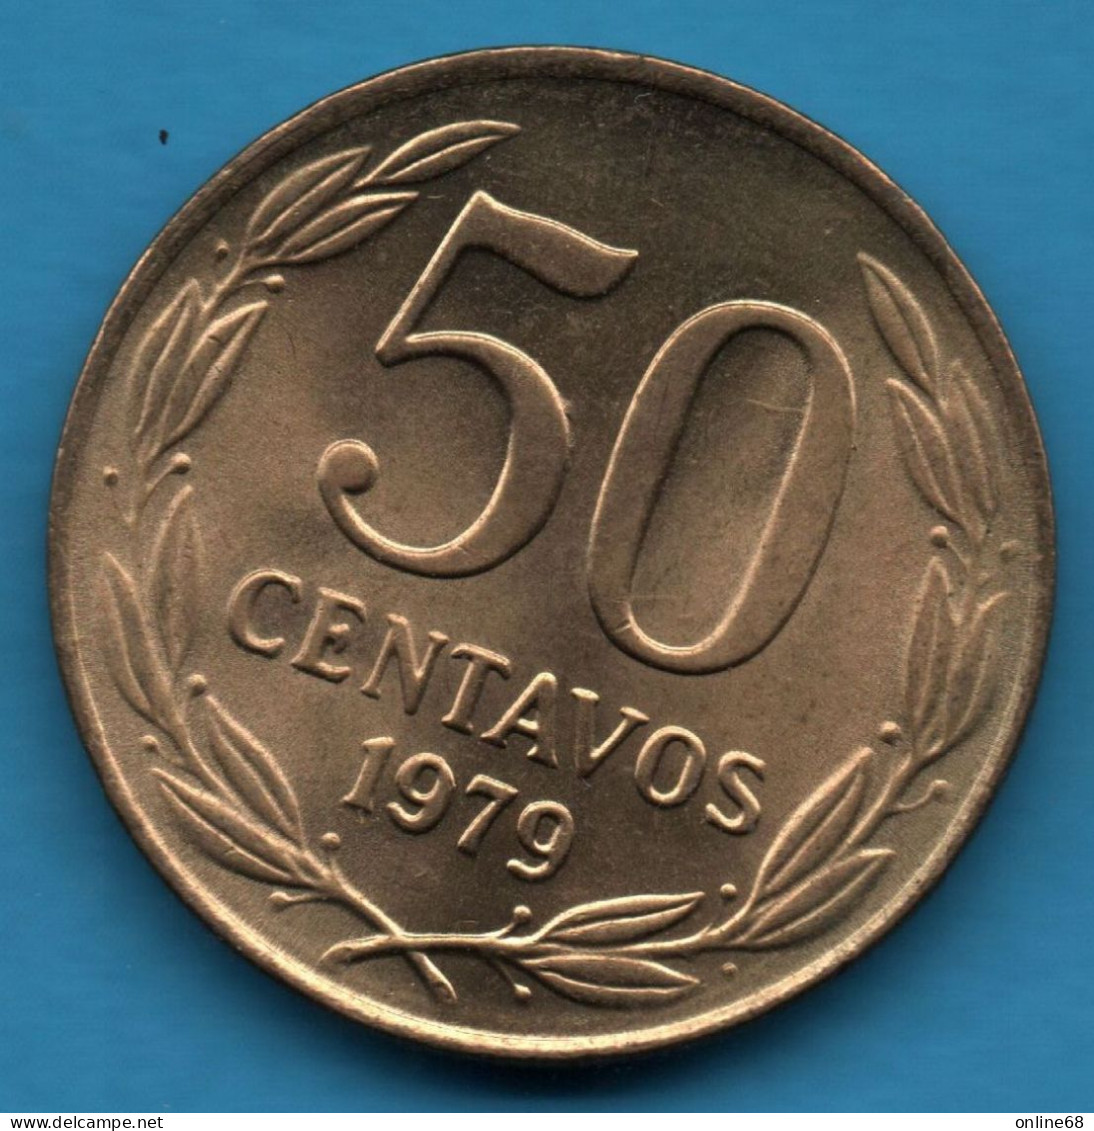 CHILE 50 CENTAVOS 1979 KM# 206a CONDOR - Chili